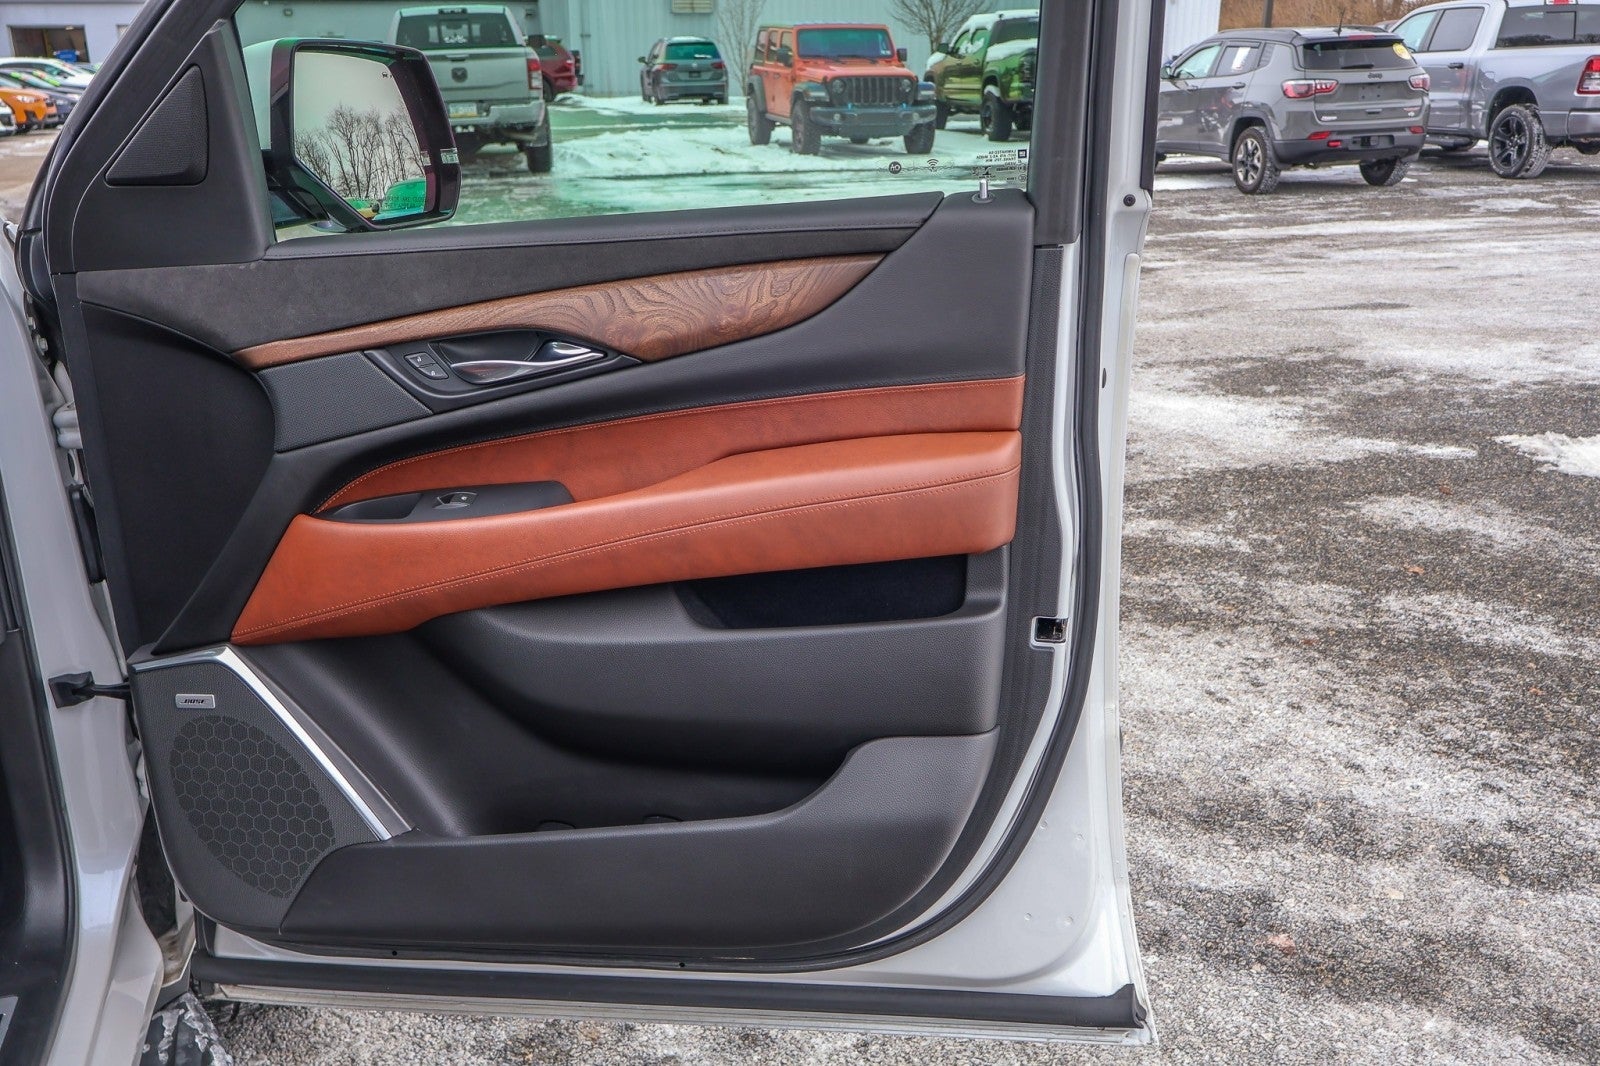 2019 Cadillac Escalade Premium Luxury 4WD